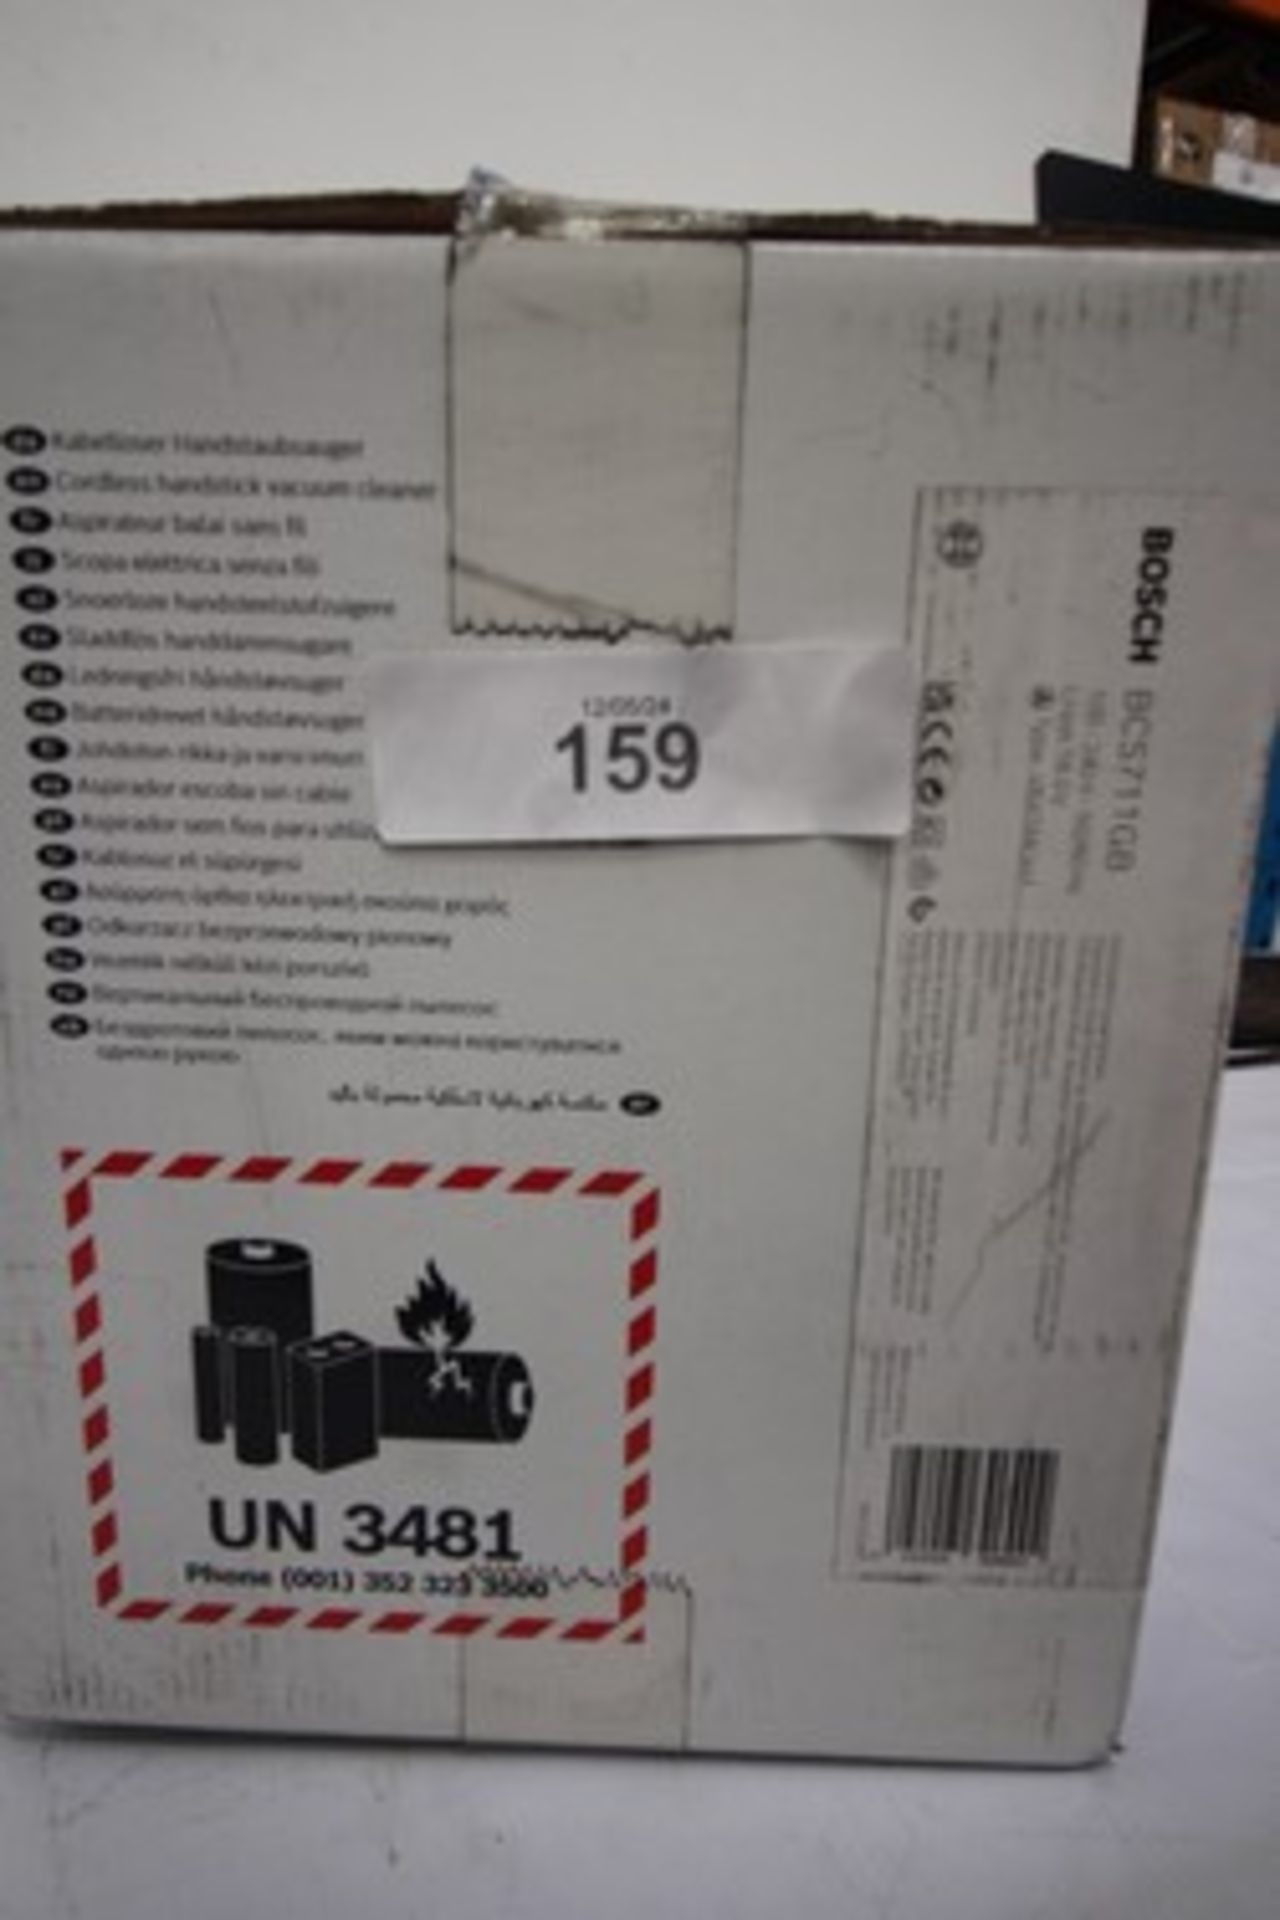 1 x Bosch unlimited 7 cordless vacuum, Model BCS711GB - New (ES2) - Image 2 of 2